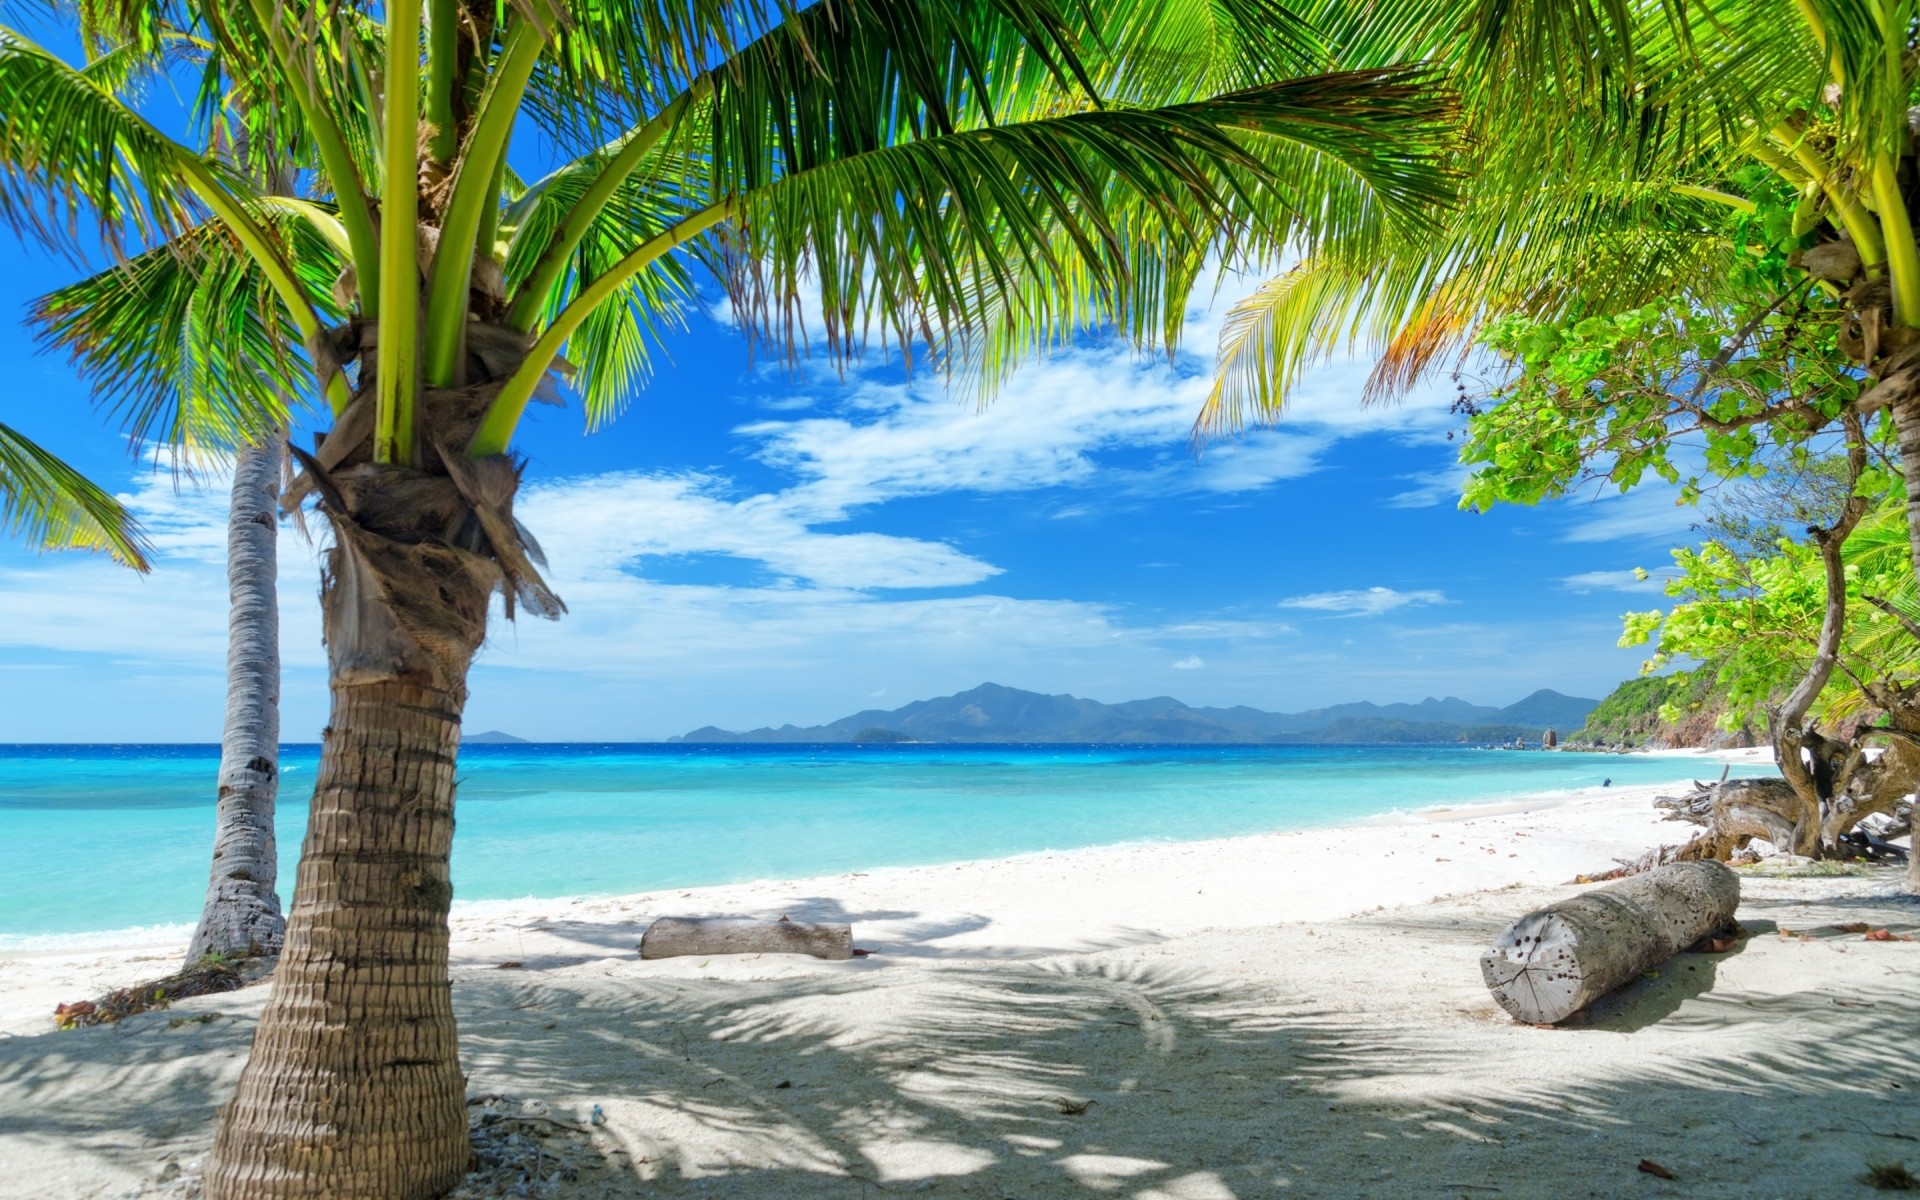 пейзажи тропический пляж ладони путешествия моря песок остров океан воды бирюза лето экзотические отпуск рай релаксация идиллия курорт кокосовое пейзаж лагуна пейзаж голубое небо